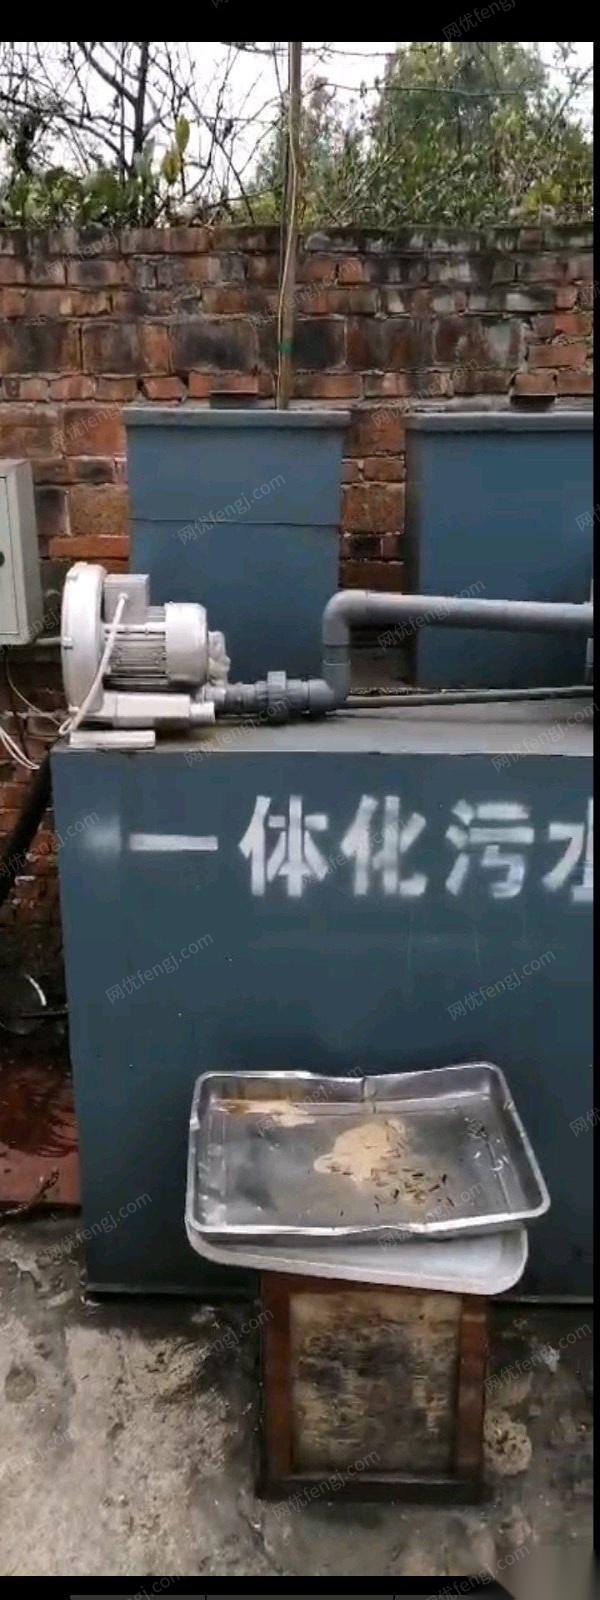 重庆沙坪坝区因搬家出售二手闲置2019年一体化污水处理设备 10000元